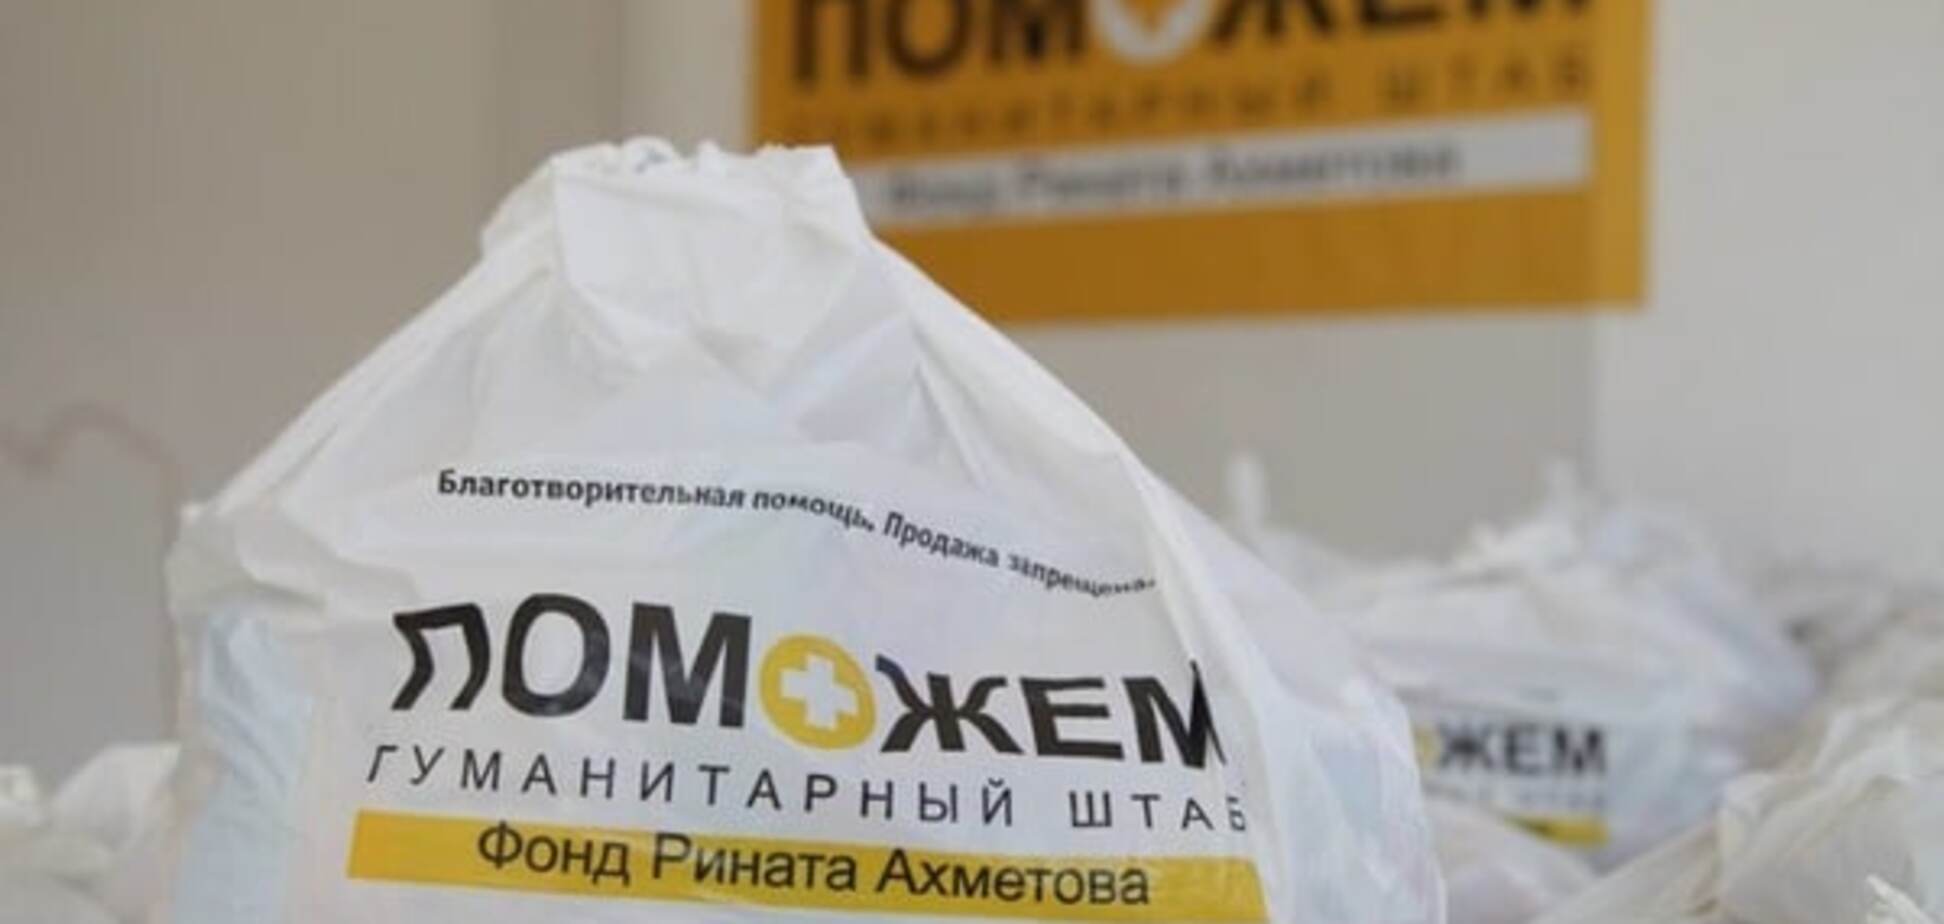 Штаб Ахметова впервые доставил гуманитарную помощь в Пески